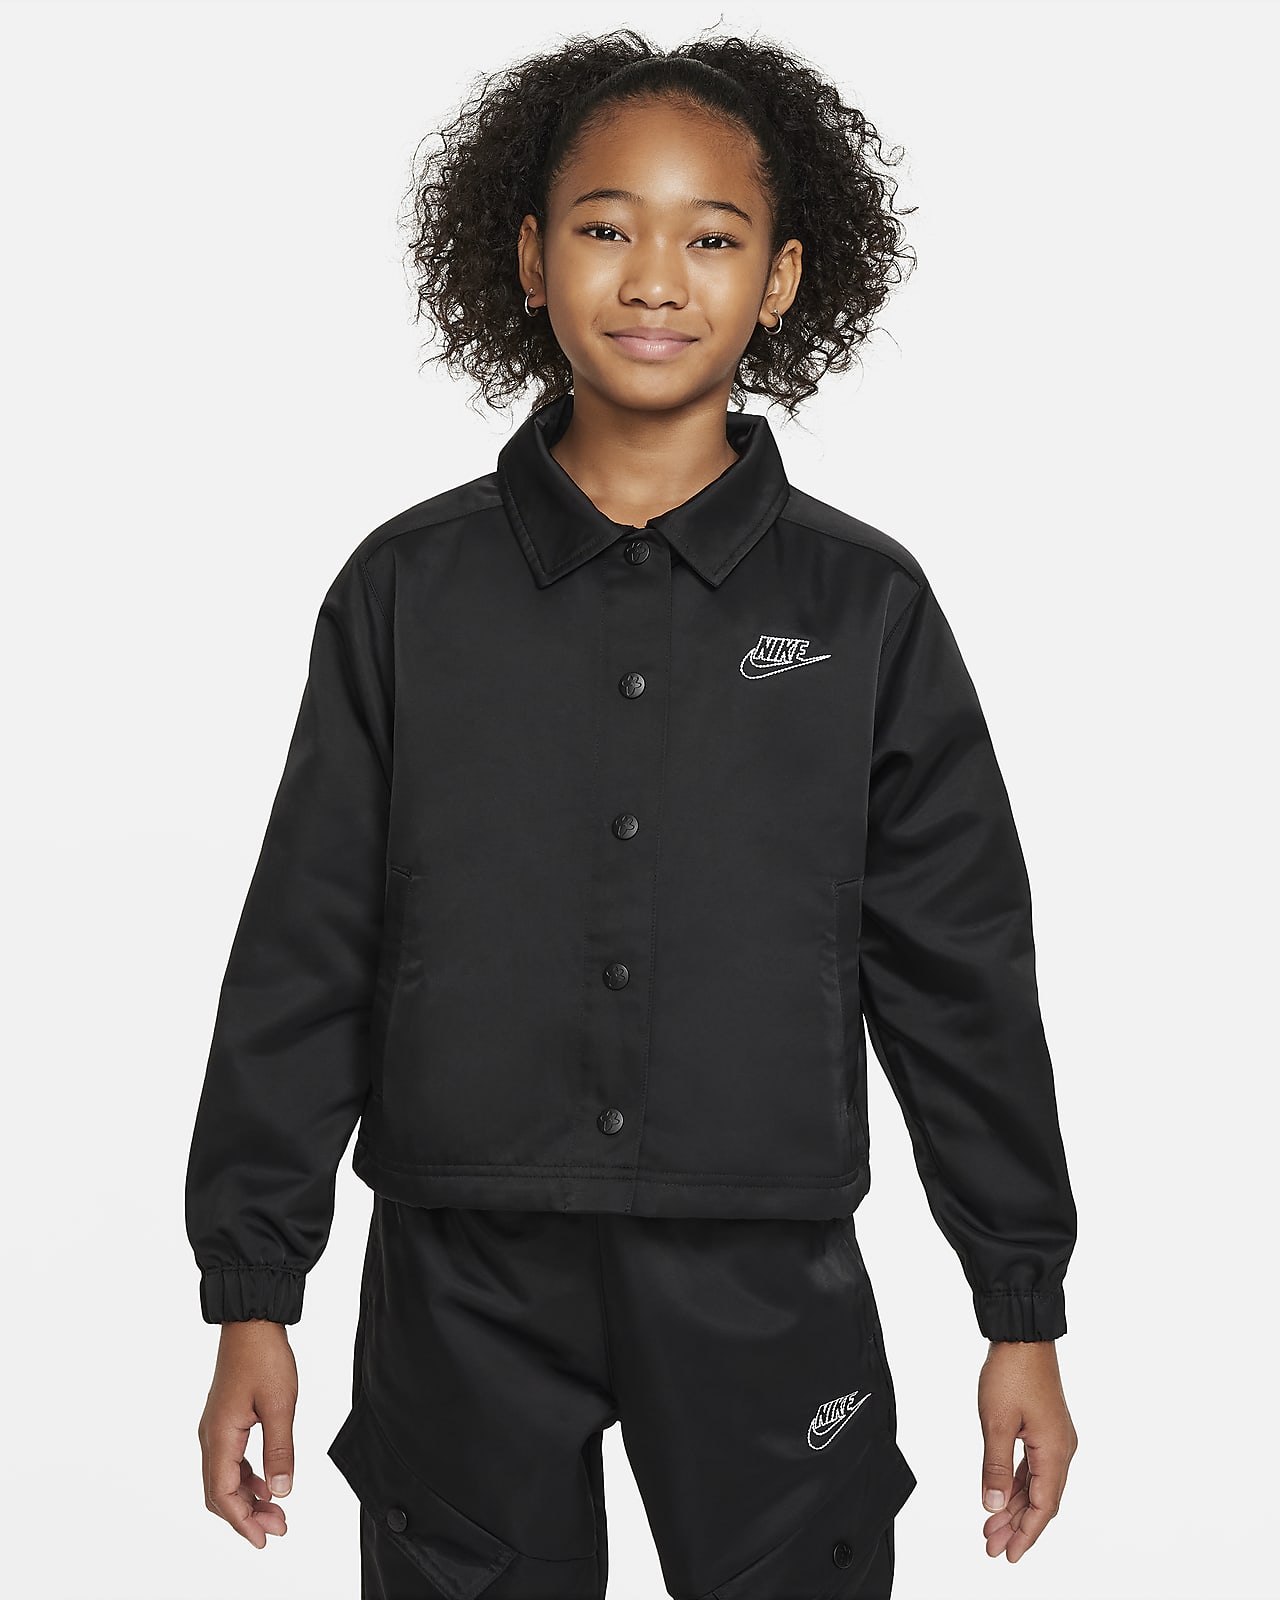 Nike Sportswear Older Kids' (Girls') Jacket